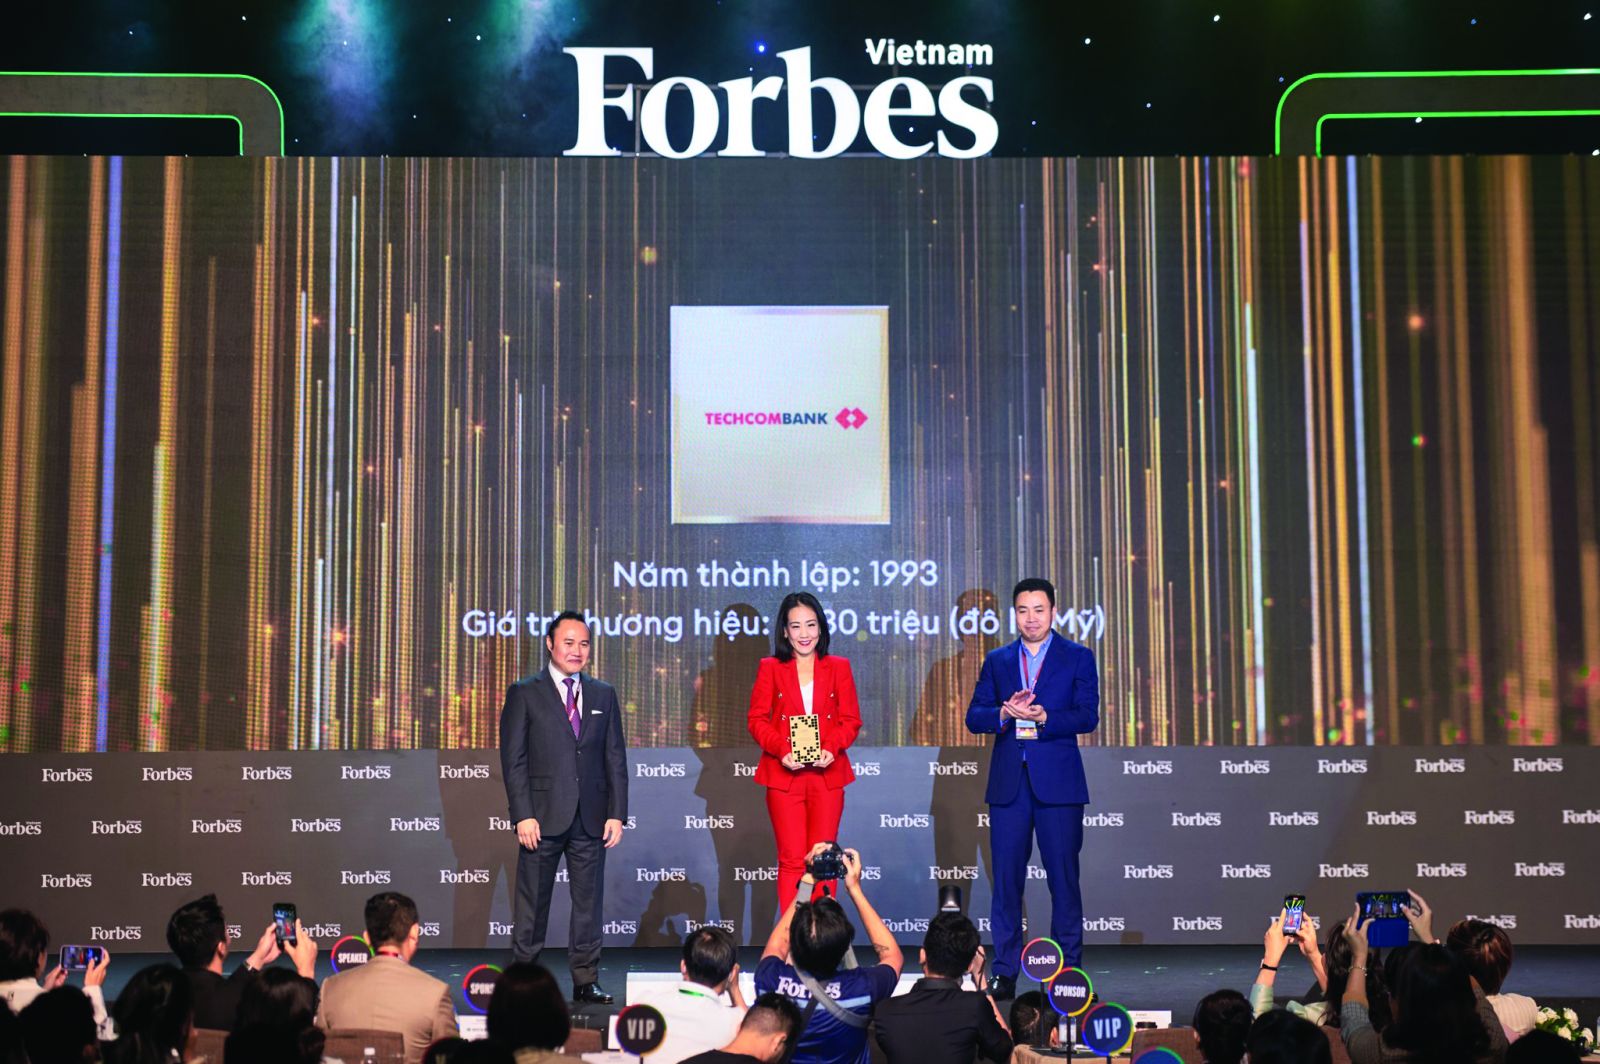  Bà Thái Minh Diễm Tú – Giám đốc Khối Tiếp thị Techcombank nhận danh hiệu Top2 thương hiệu tài chính dẫn đầu Việt Nam do Forbes tổ chức chiều 27/10.